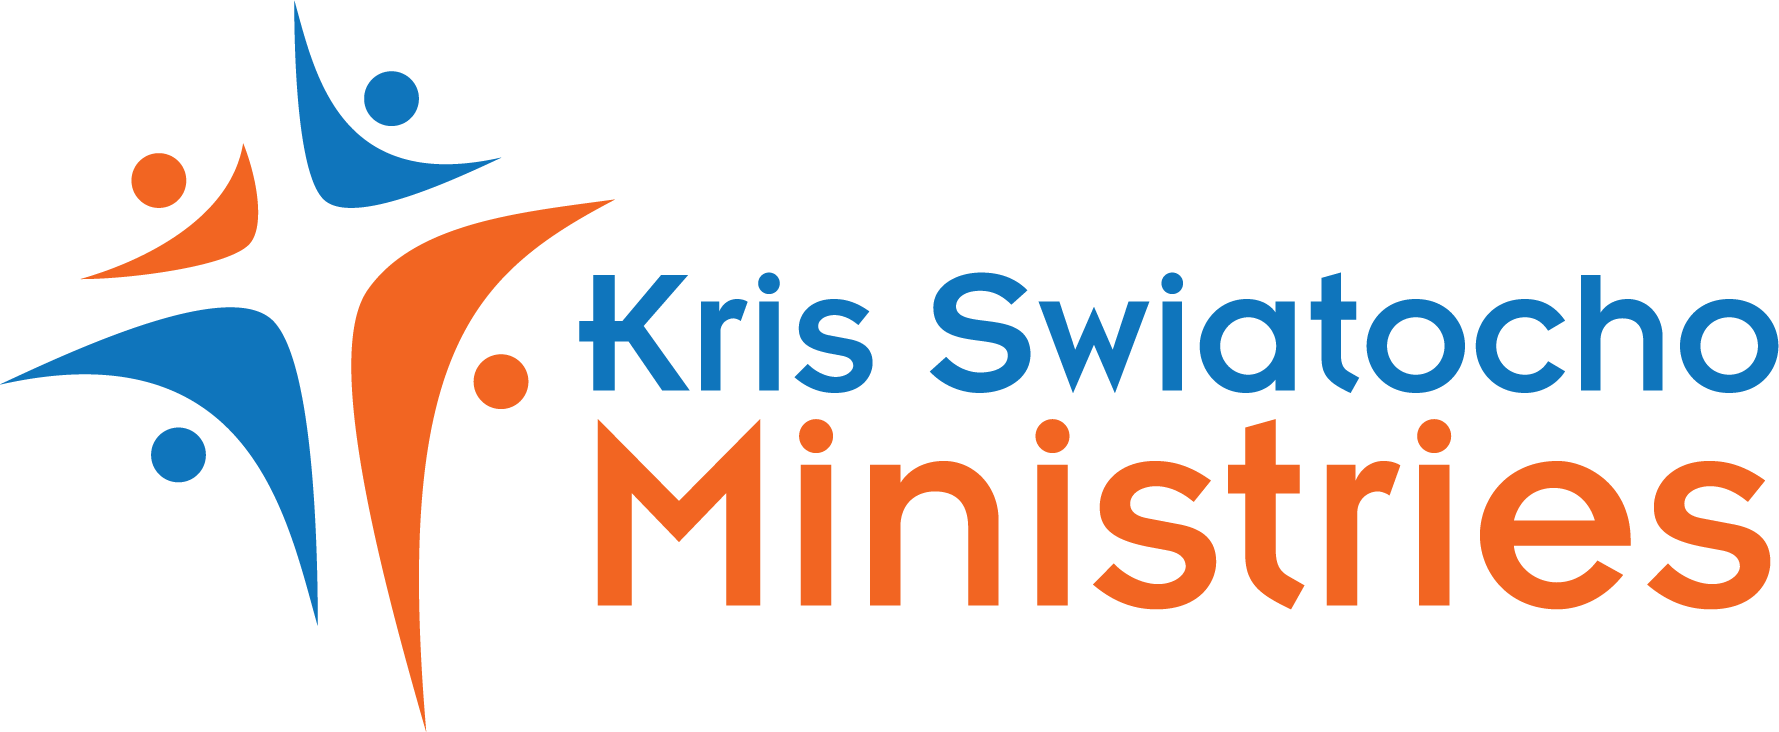 Kris Swiatocho Ministries Logo